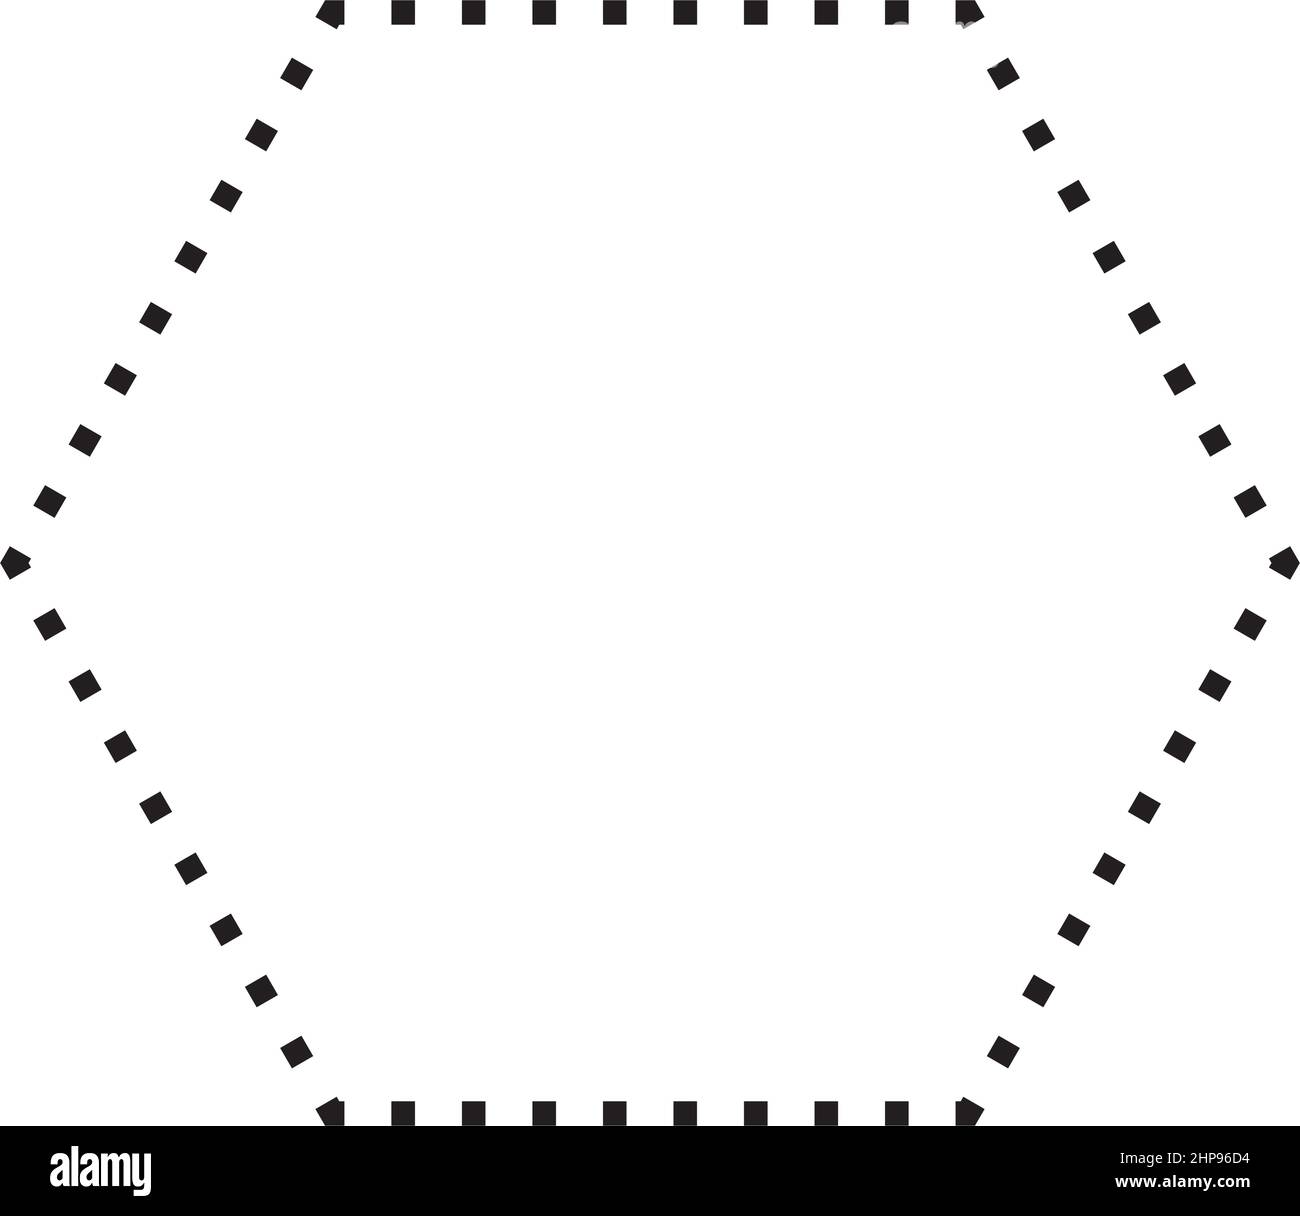 Hexagon-Form gepunktetes Symbol Vektor-Symbol für kreatives Grafikdesign ui-Element in einer Piktogramm-Illustration Stock Vektor